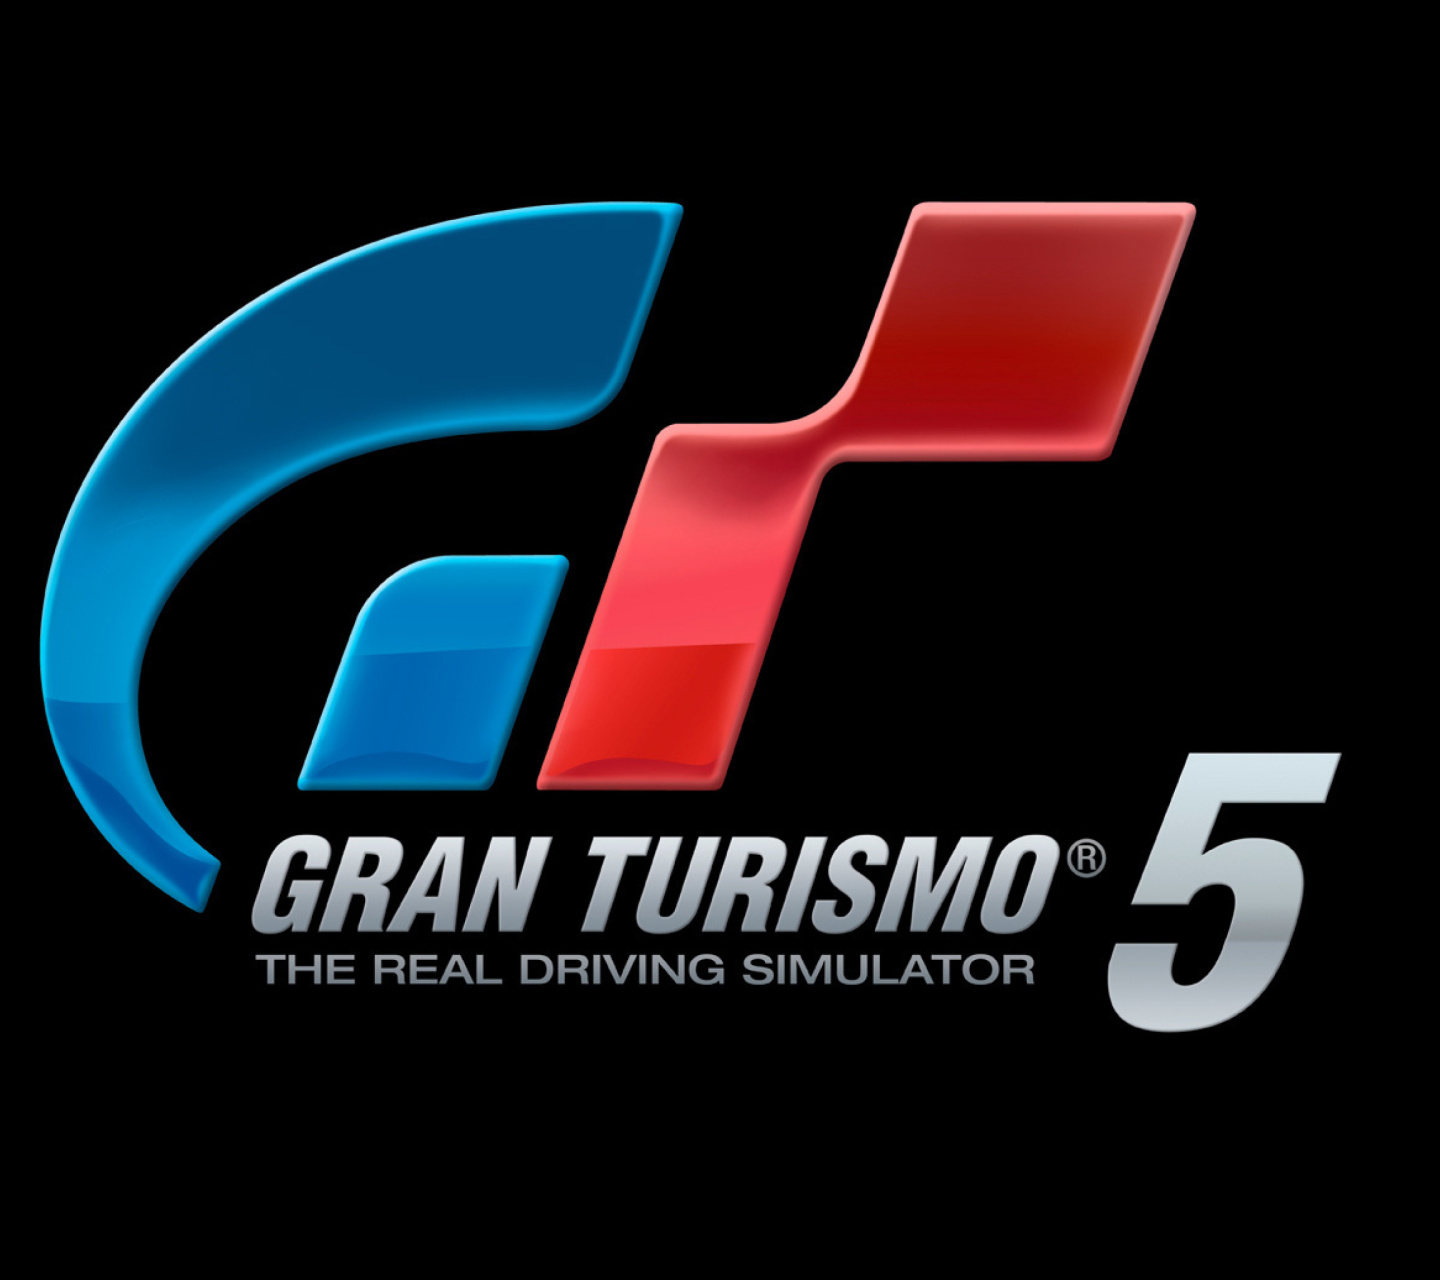 Gran Turismo 5 Driving Simulator wallpaper 1440x1280